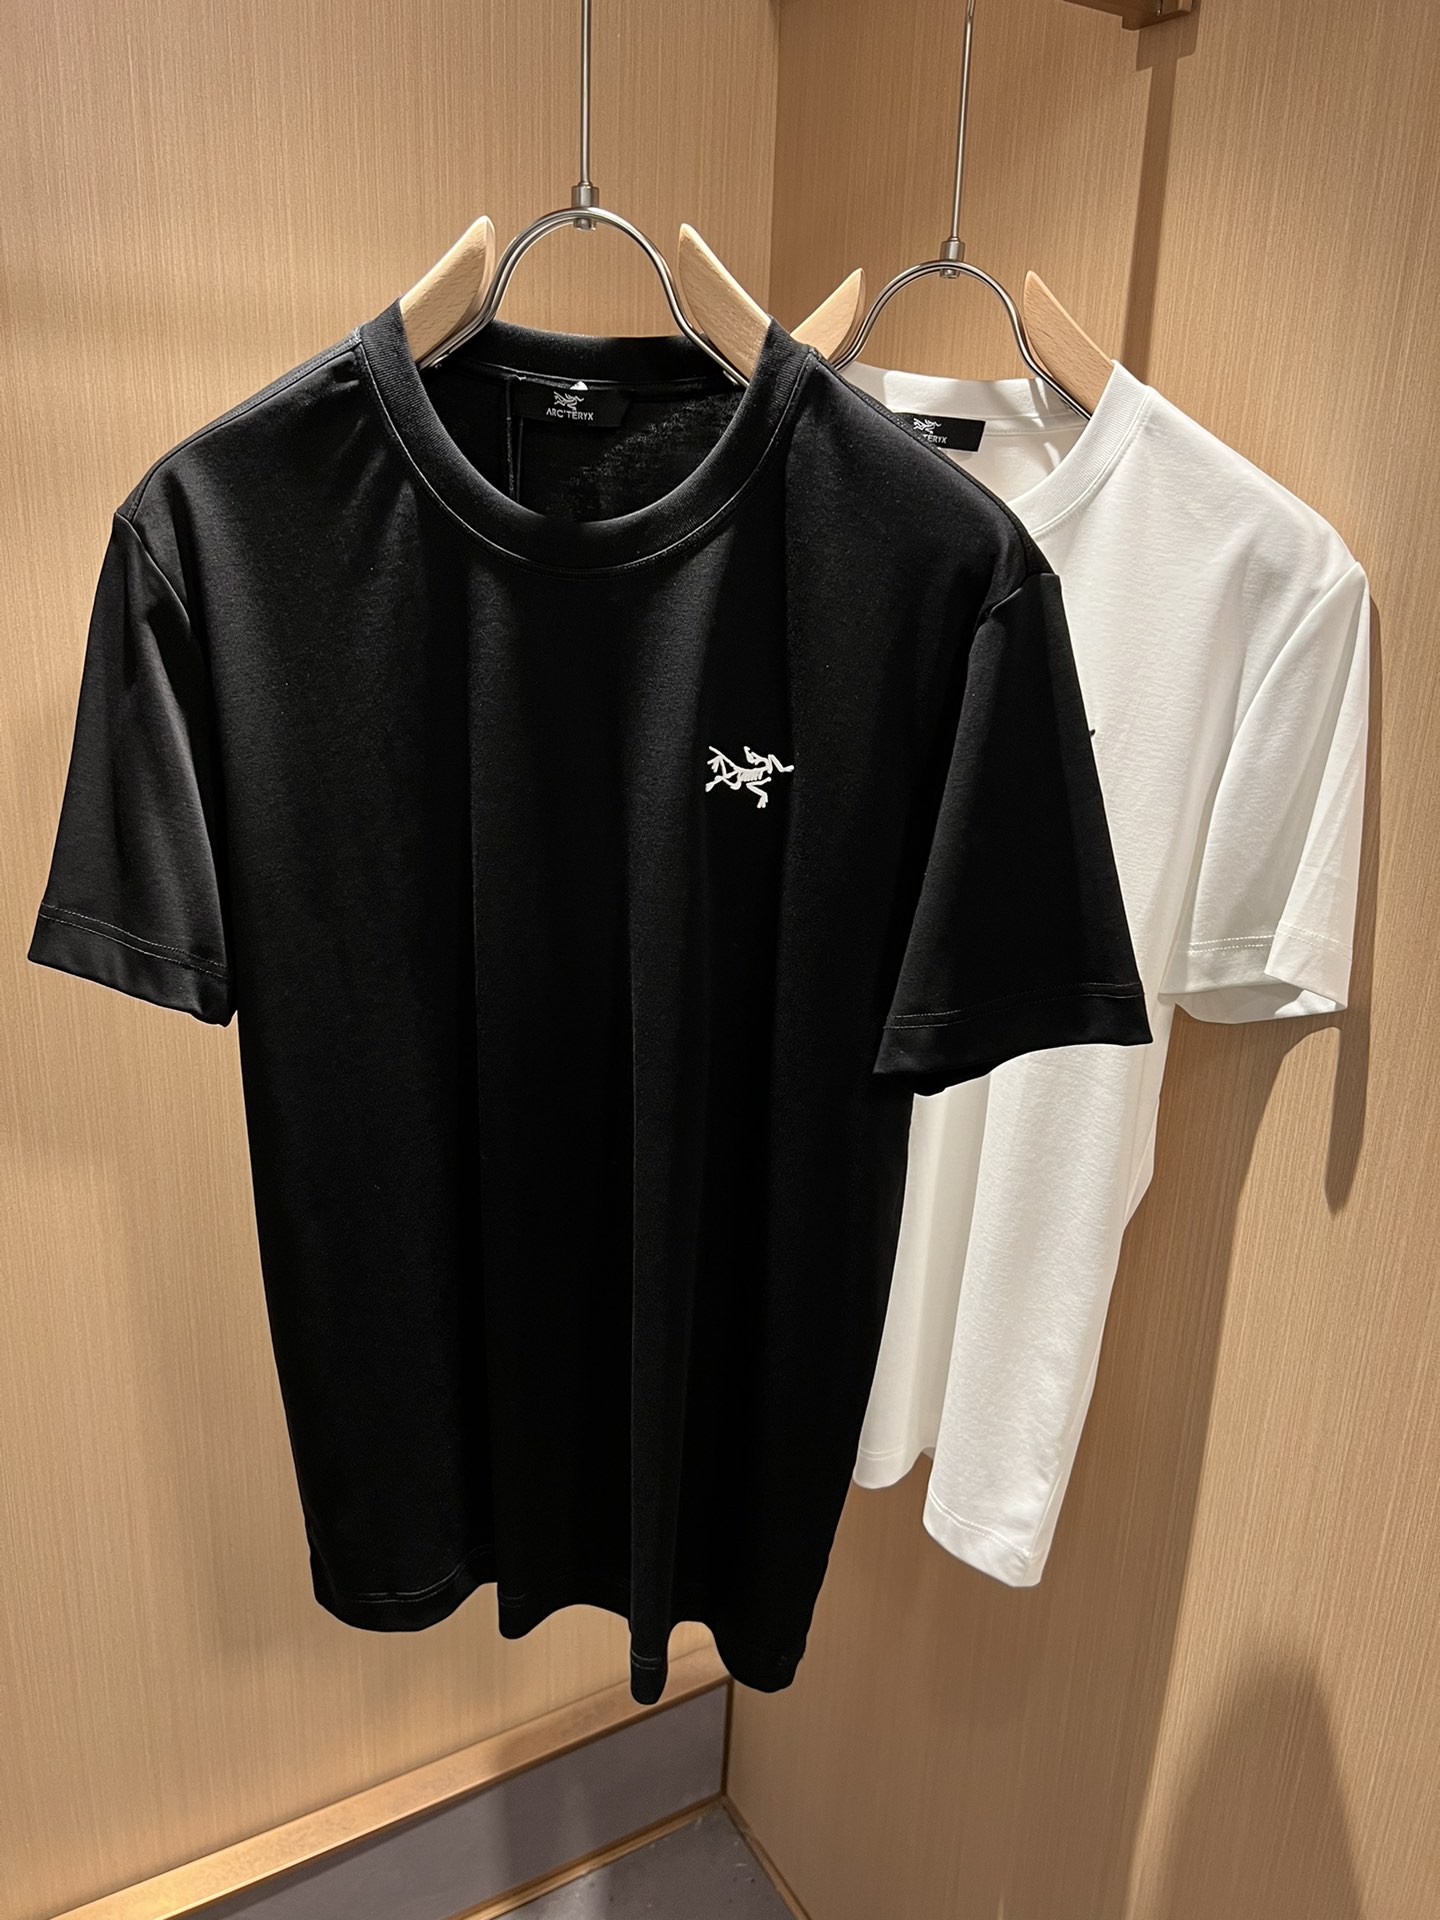 Arc’teryx Vêtements T-Shirt Unisexe Coton Collection printemps – été Manches courtes